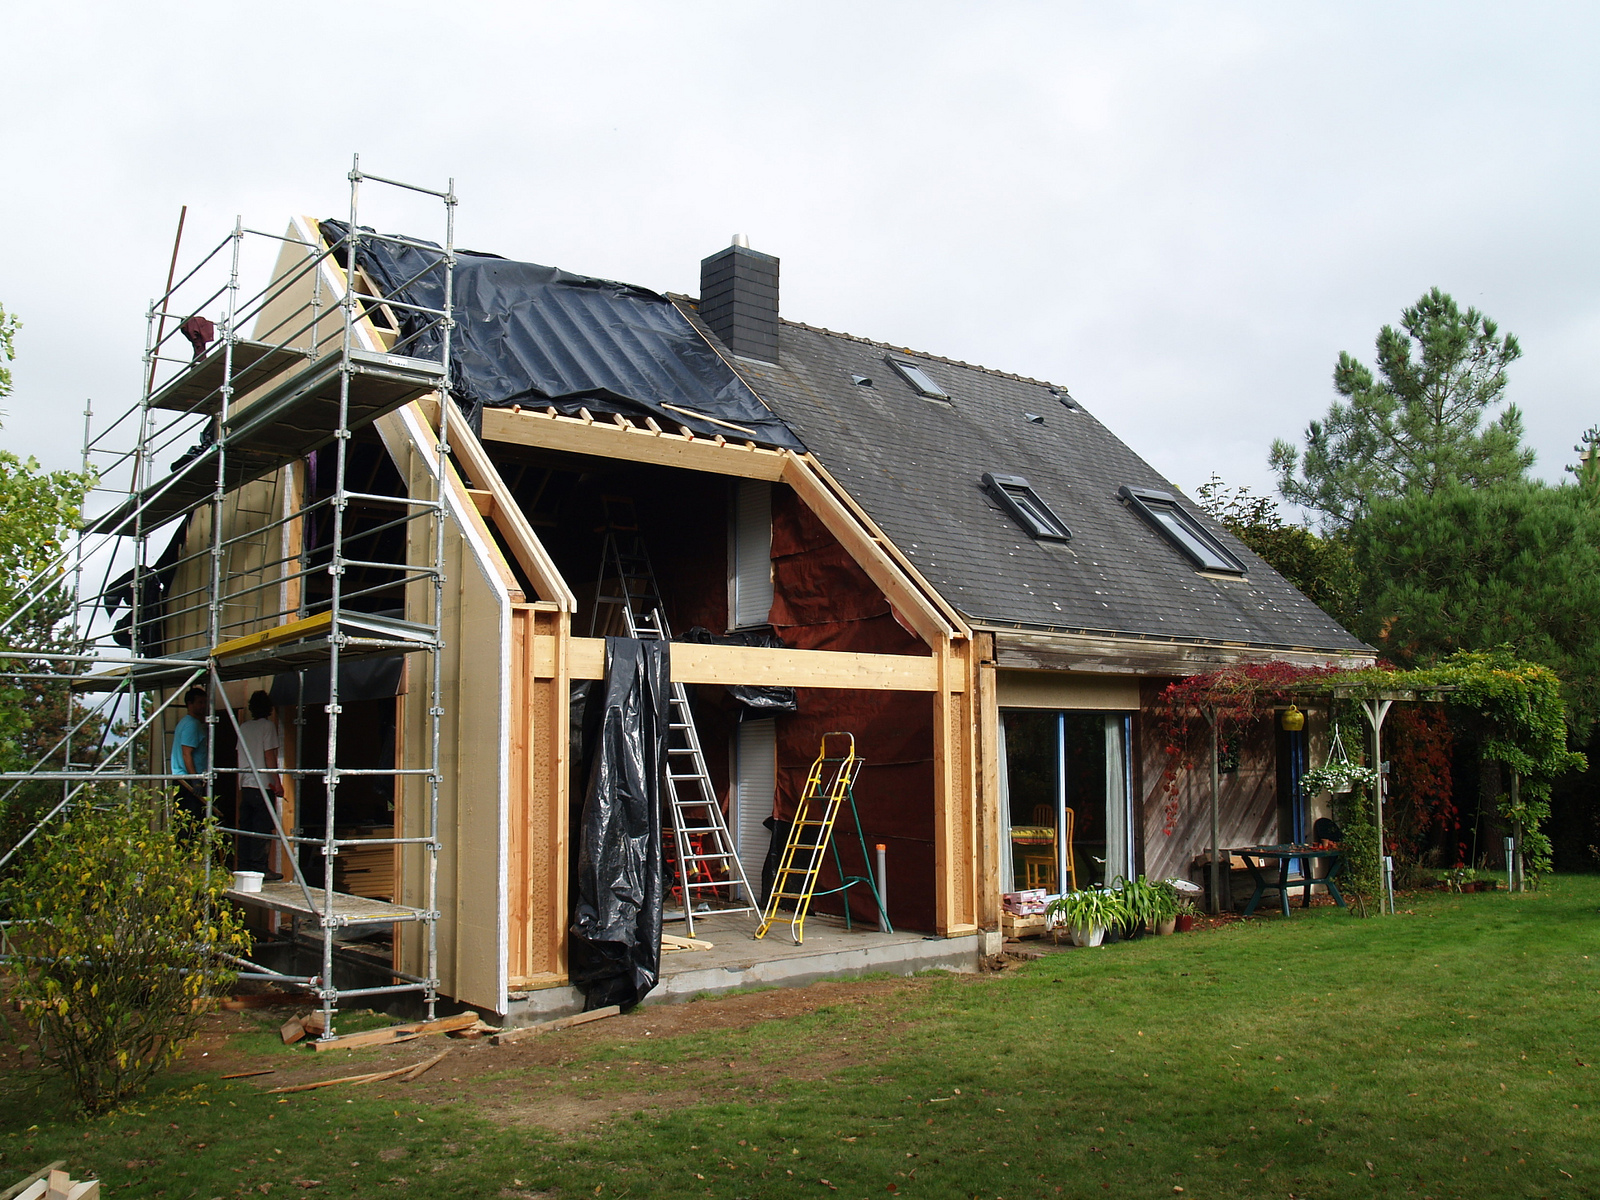 Des travaux de rénovation thermique peuvent aider à lutter contre la précarité énergétique. © Michèle Turbin, Flickr, CC by-sa&nbsp;2.0